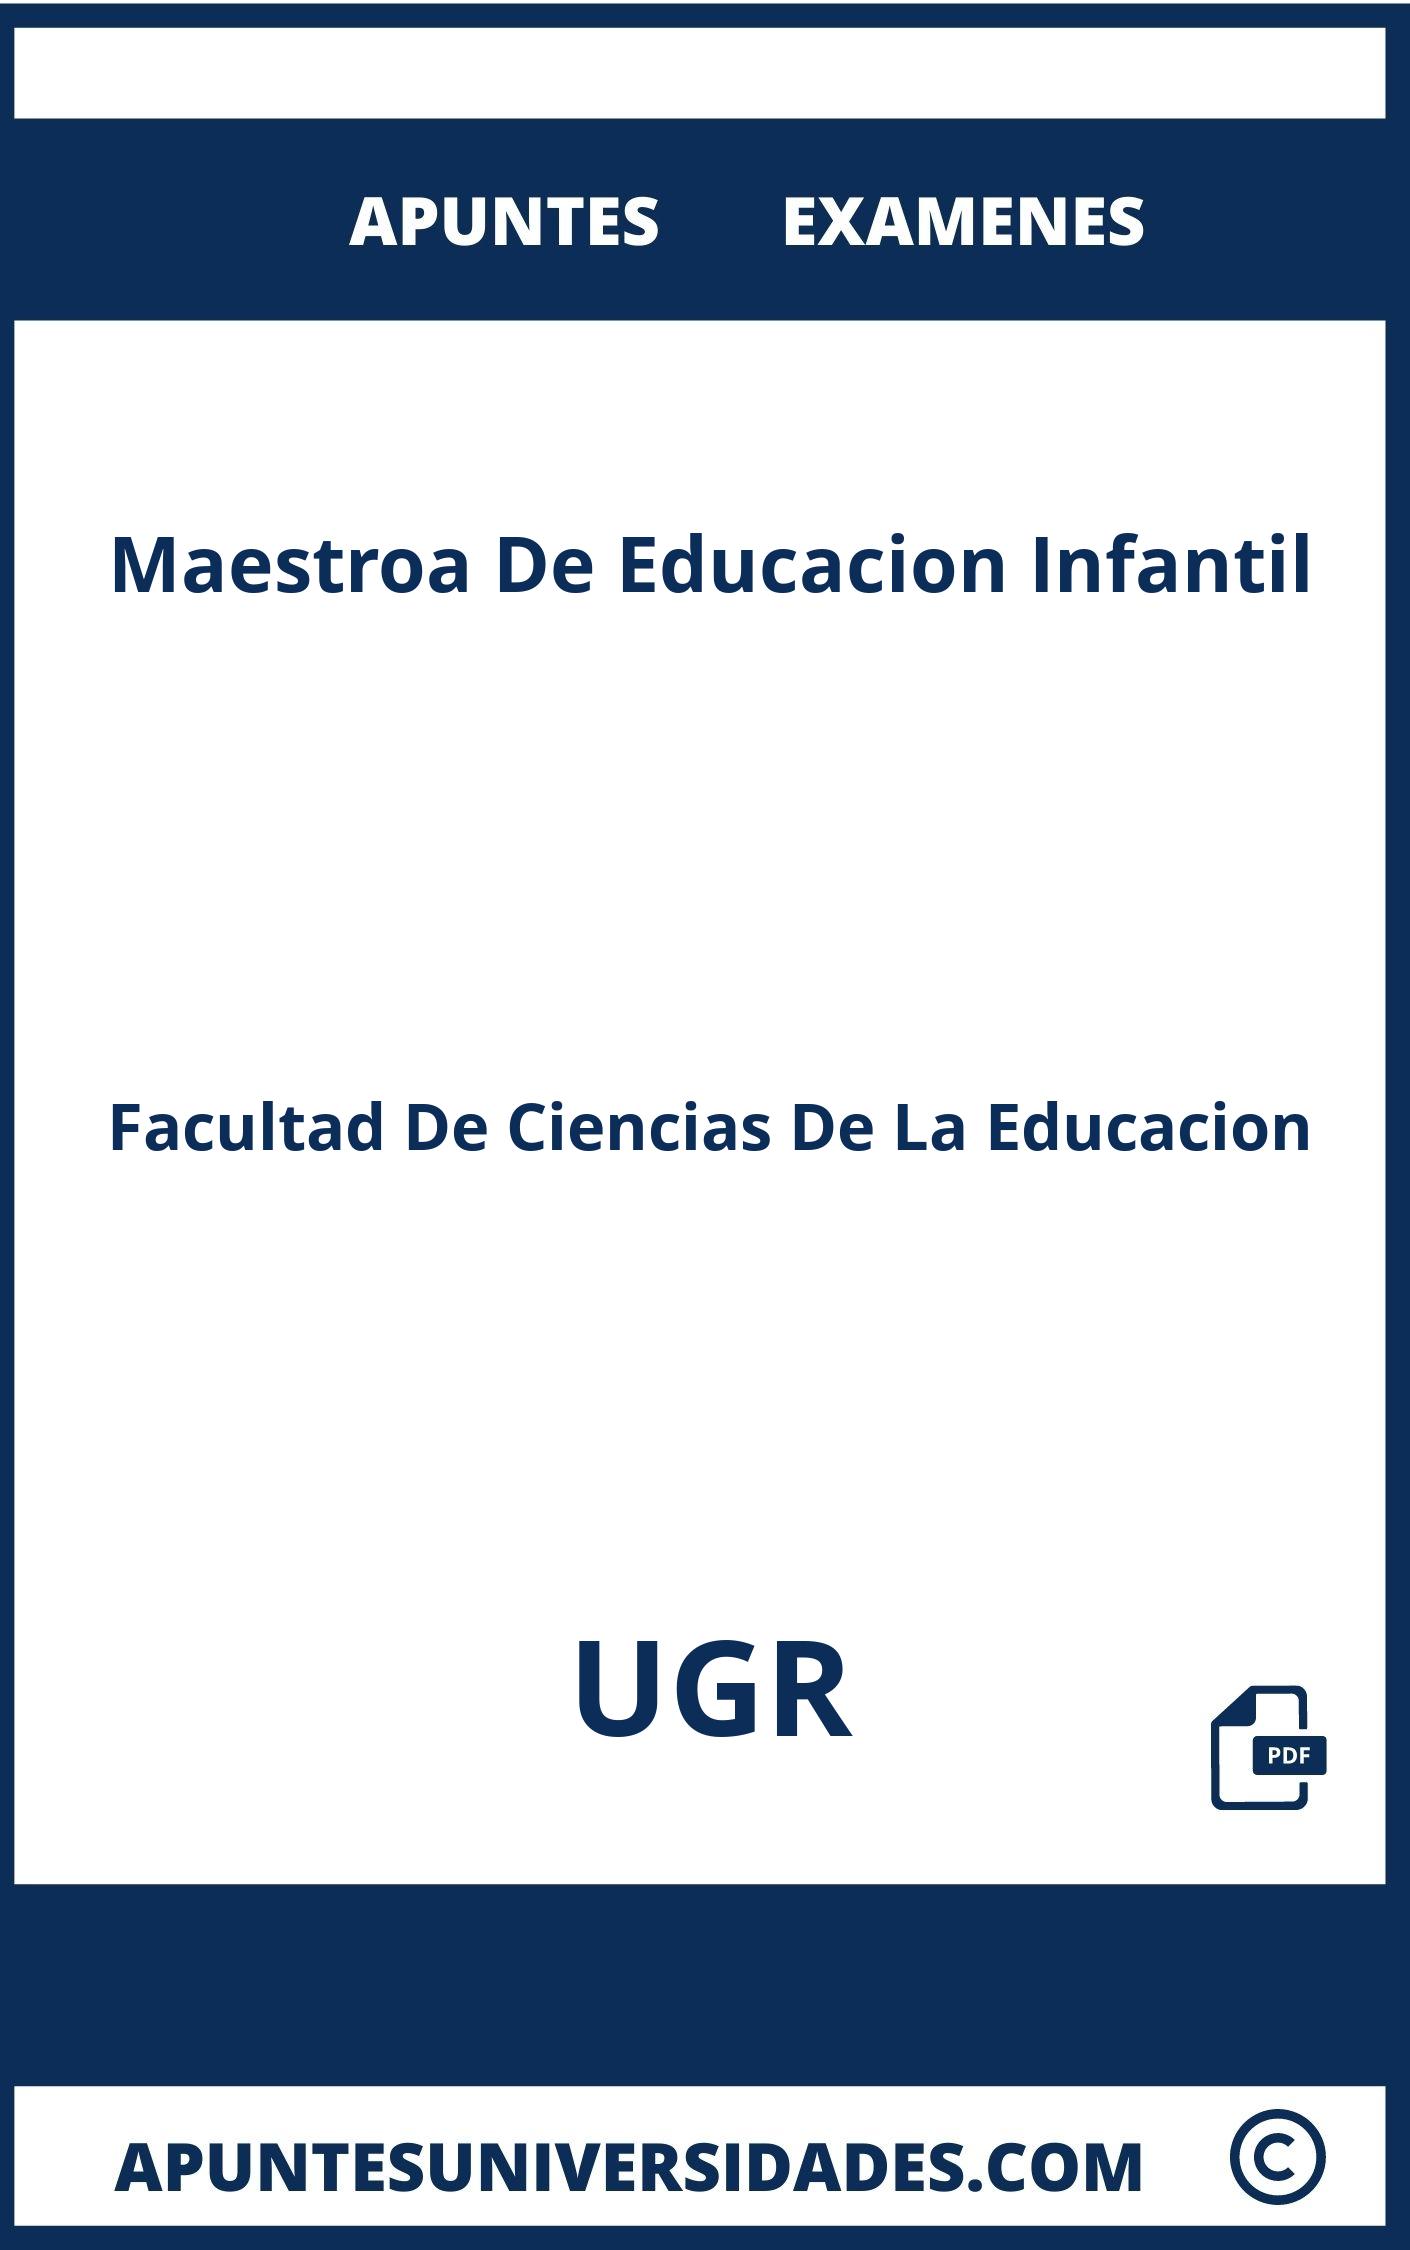 Examenes y Apuntes de Maestroa De Educacion Infantil UGR